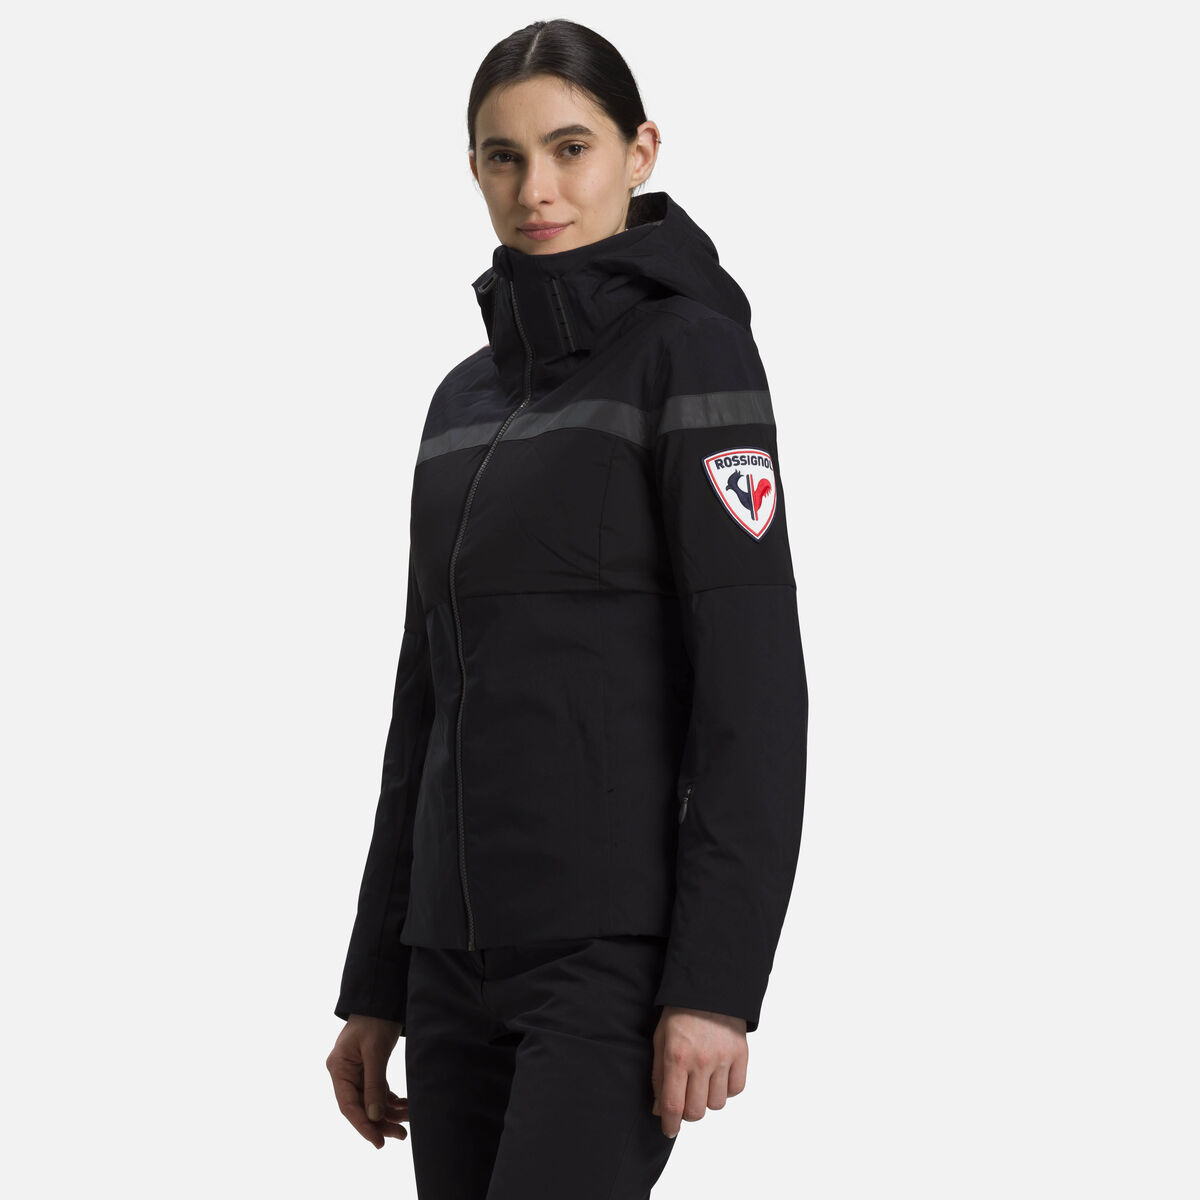 Women's Palmares ski jacket